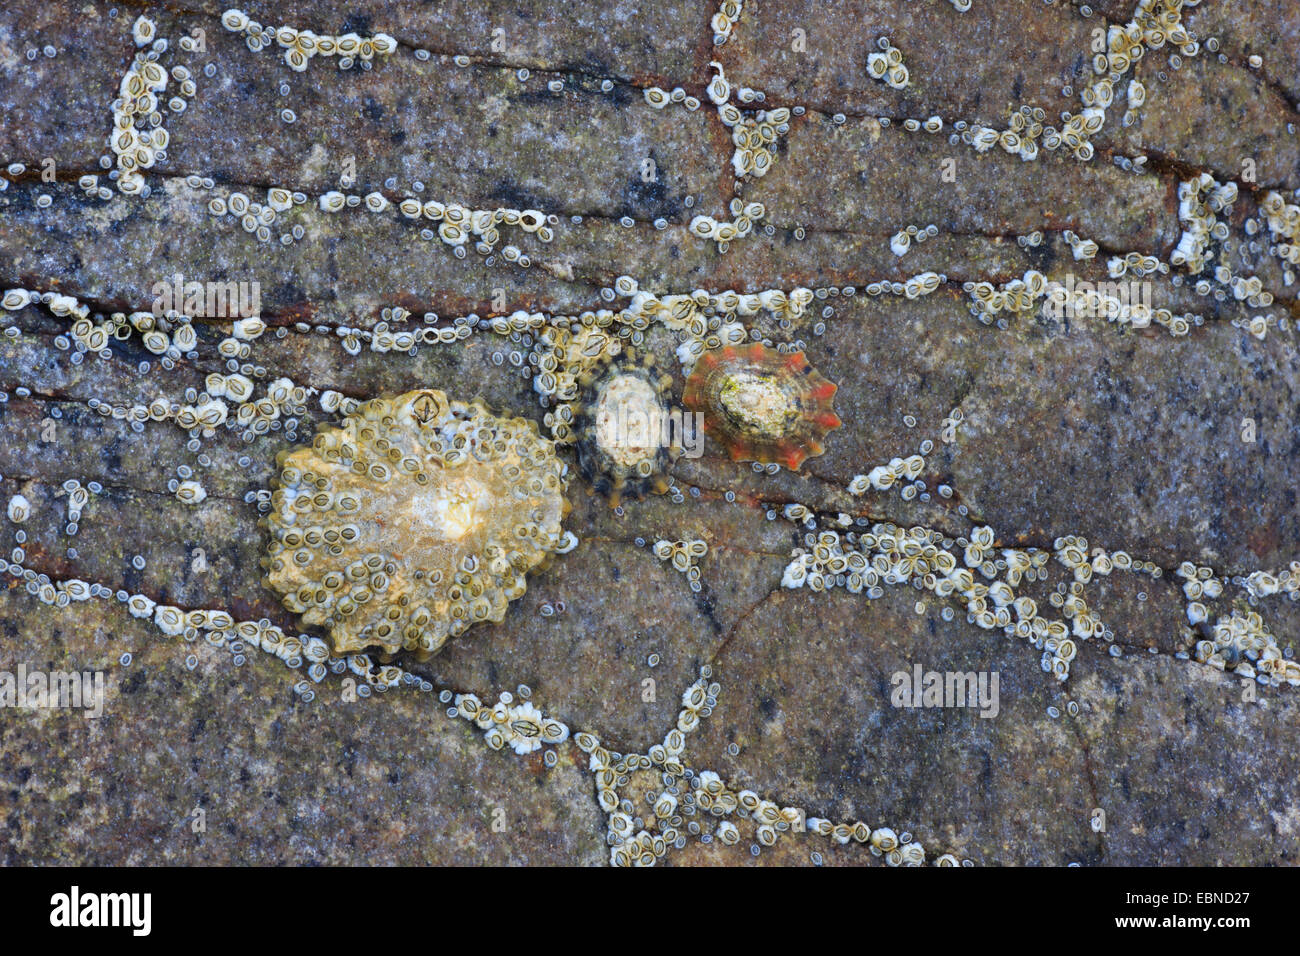 Napfschnecken, echte Napfschnecken (Patellidae), Napfschnecken auf einem Felsen, Großbritannien, Schottland Stockfoto